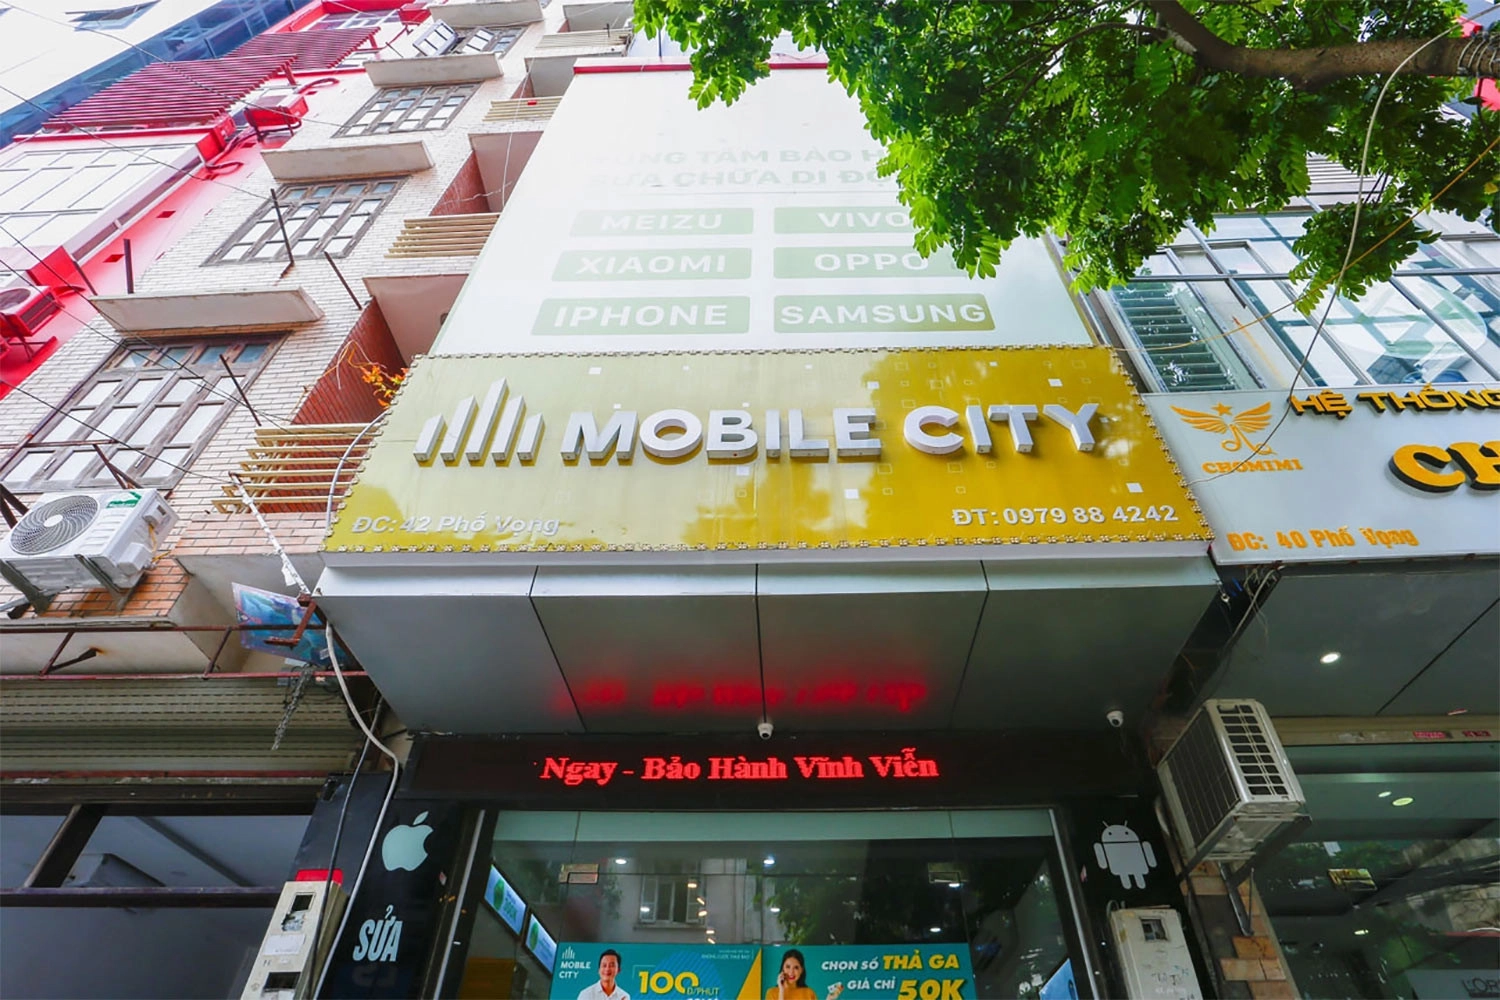 Thay Pin iPhone 6, Địa chỉ thay Pin iPhone 6 tại Hà Nội, Đà Nẵng, Tp.HCM